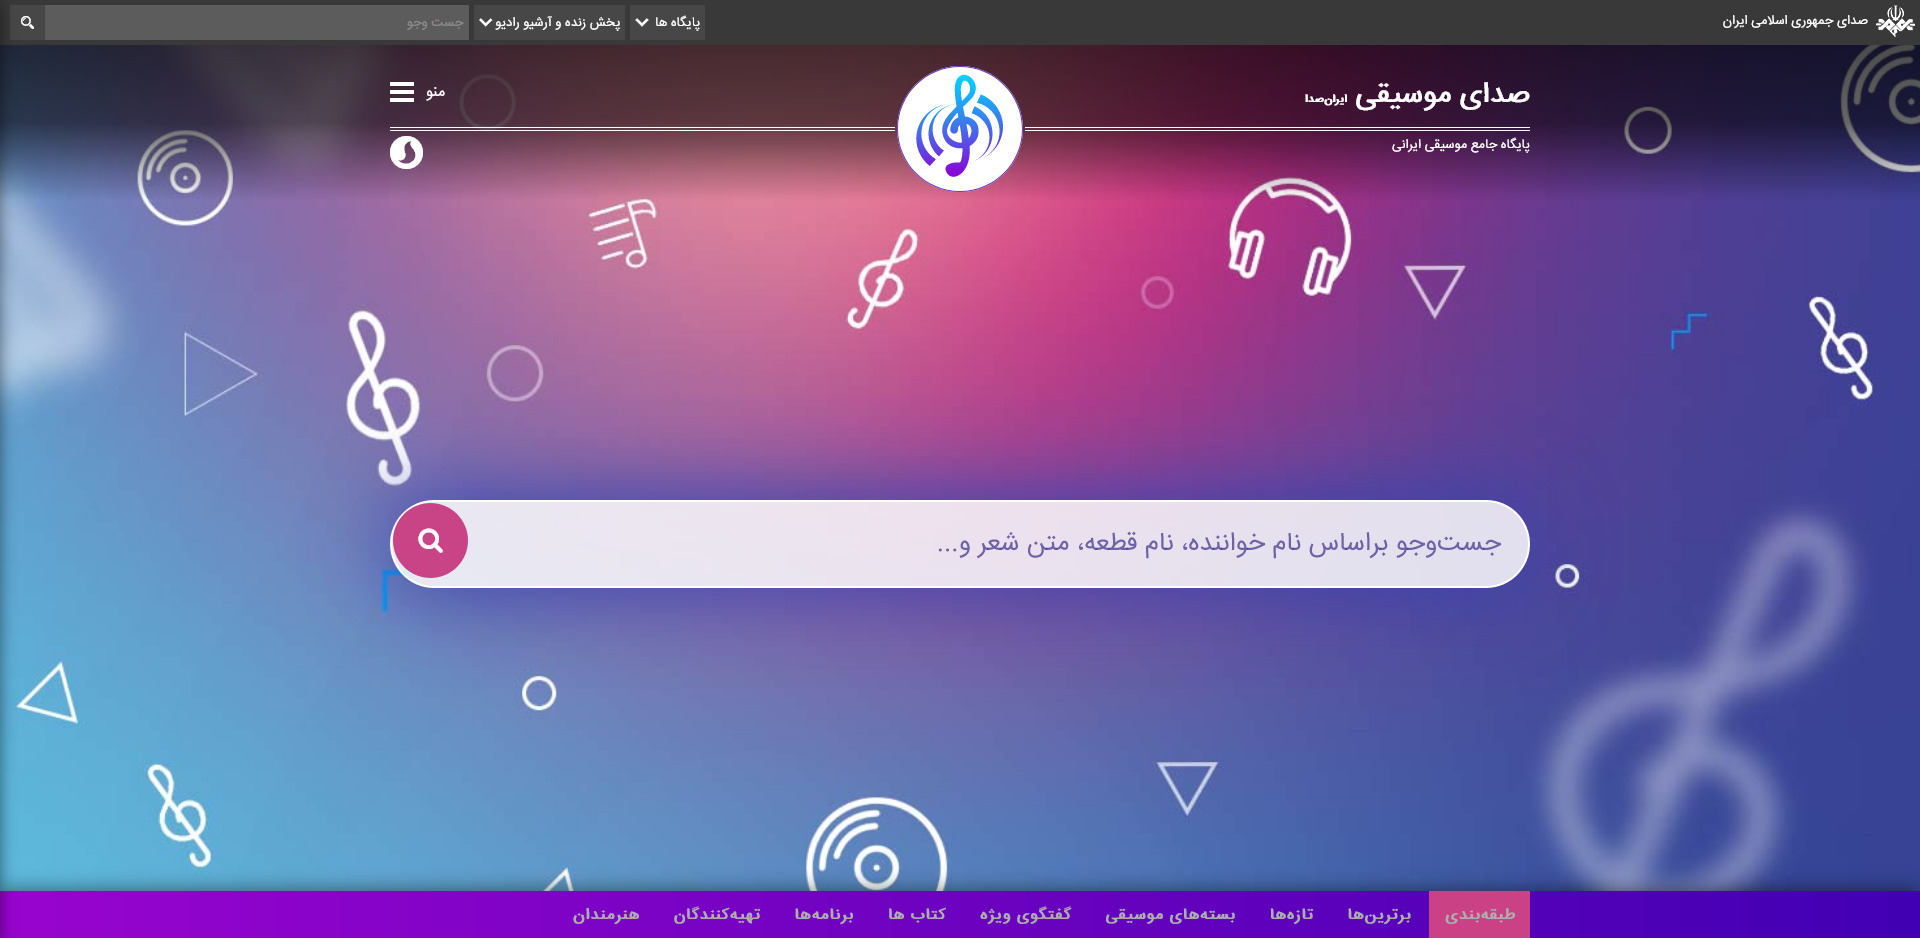 هدر وبسایت پایگاه موسیقی ایران صدا خرداد ۱۴۰۰